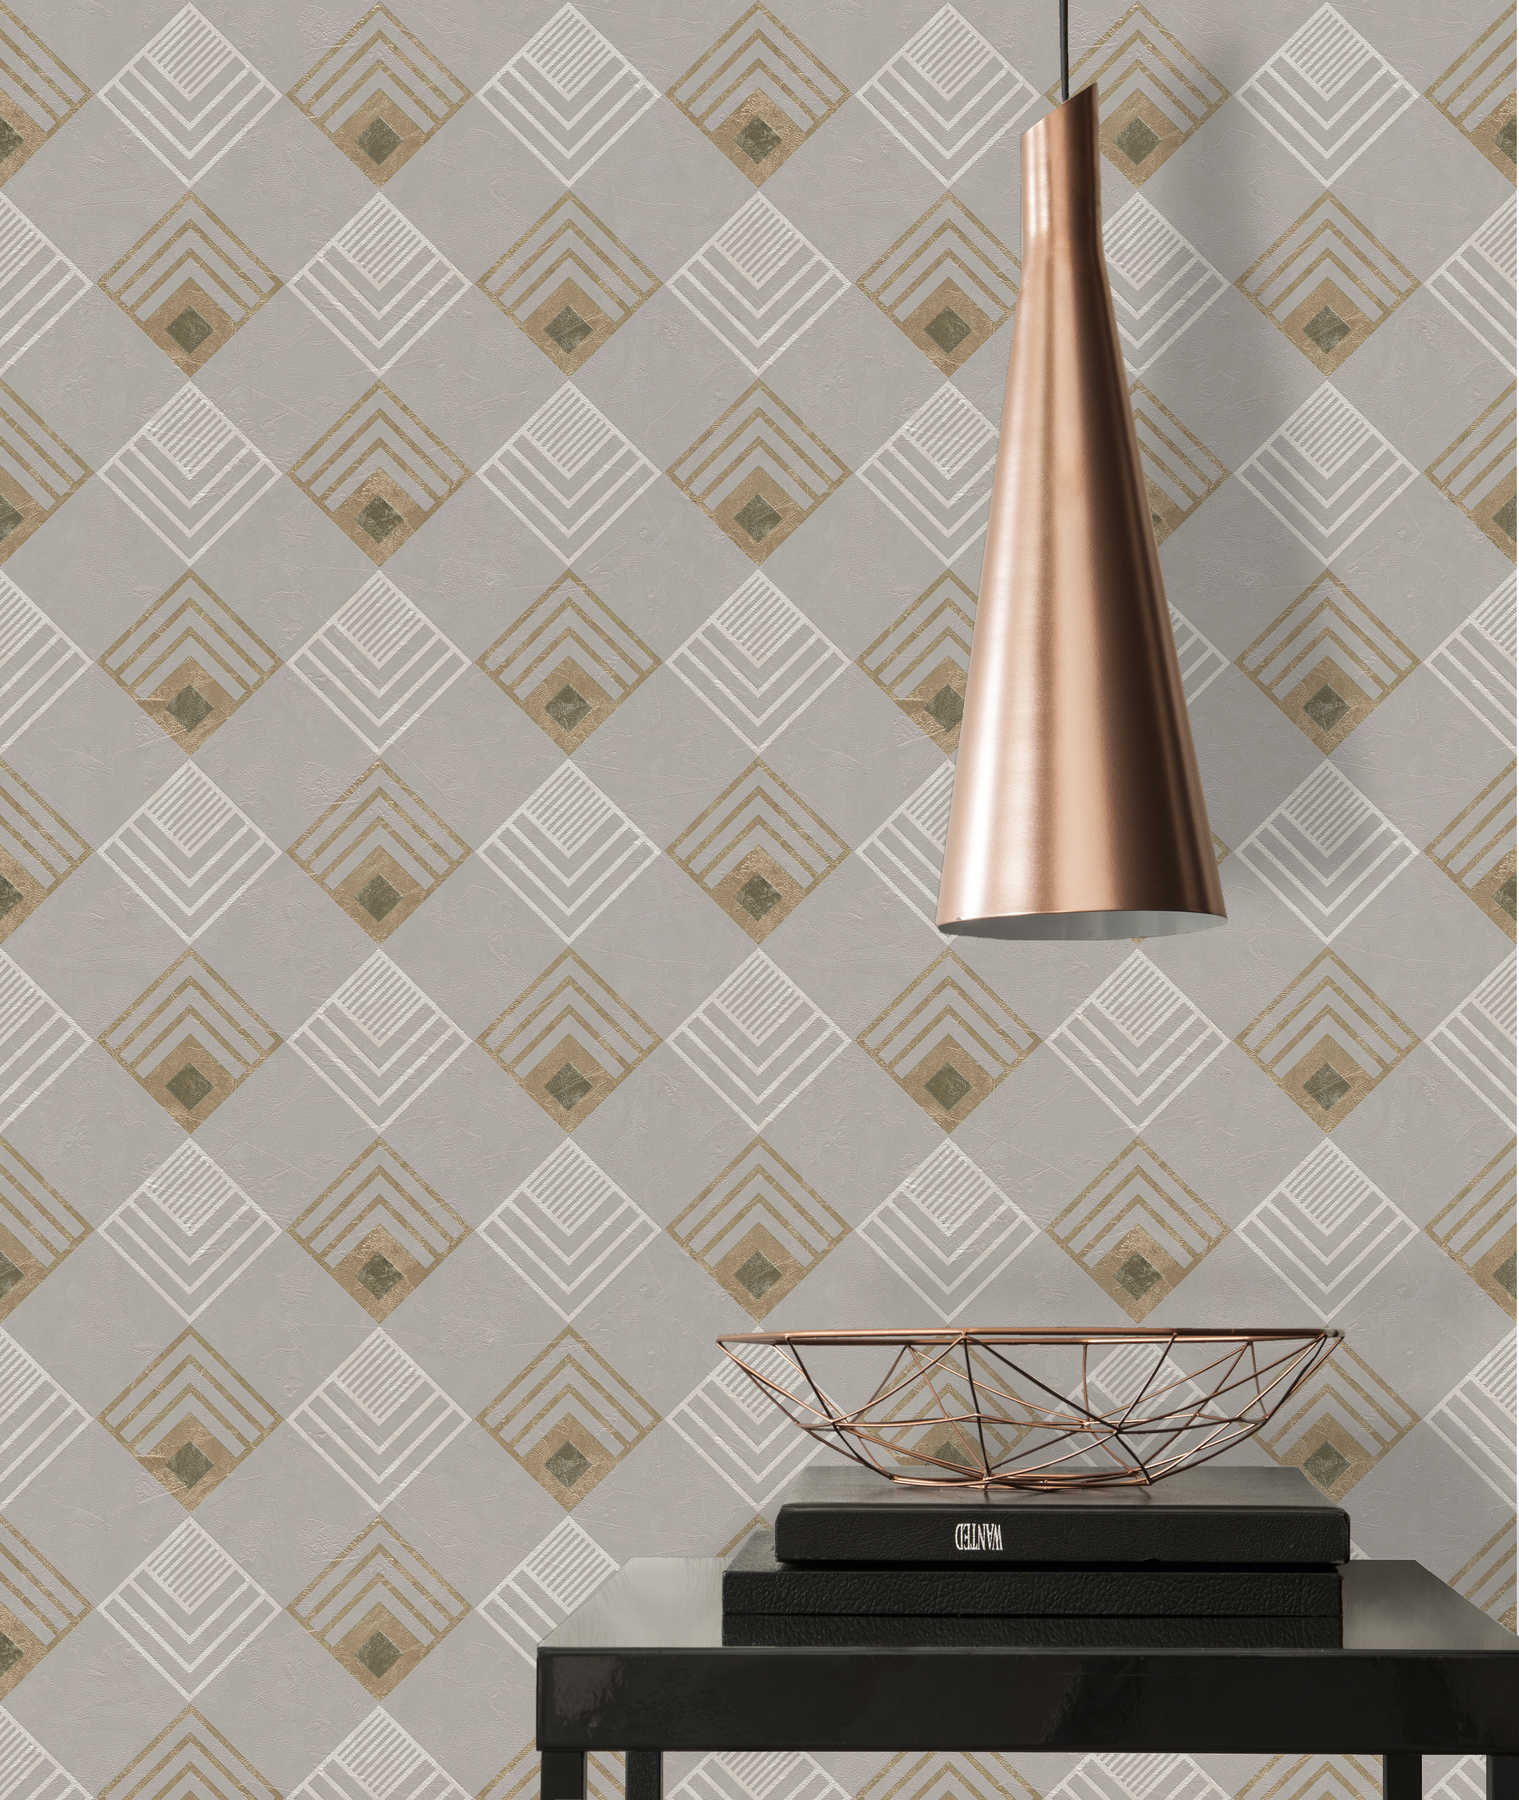             Vliesbehang Art Deco patroon, metallic effect - grijs, beige, wit
        